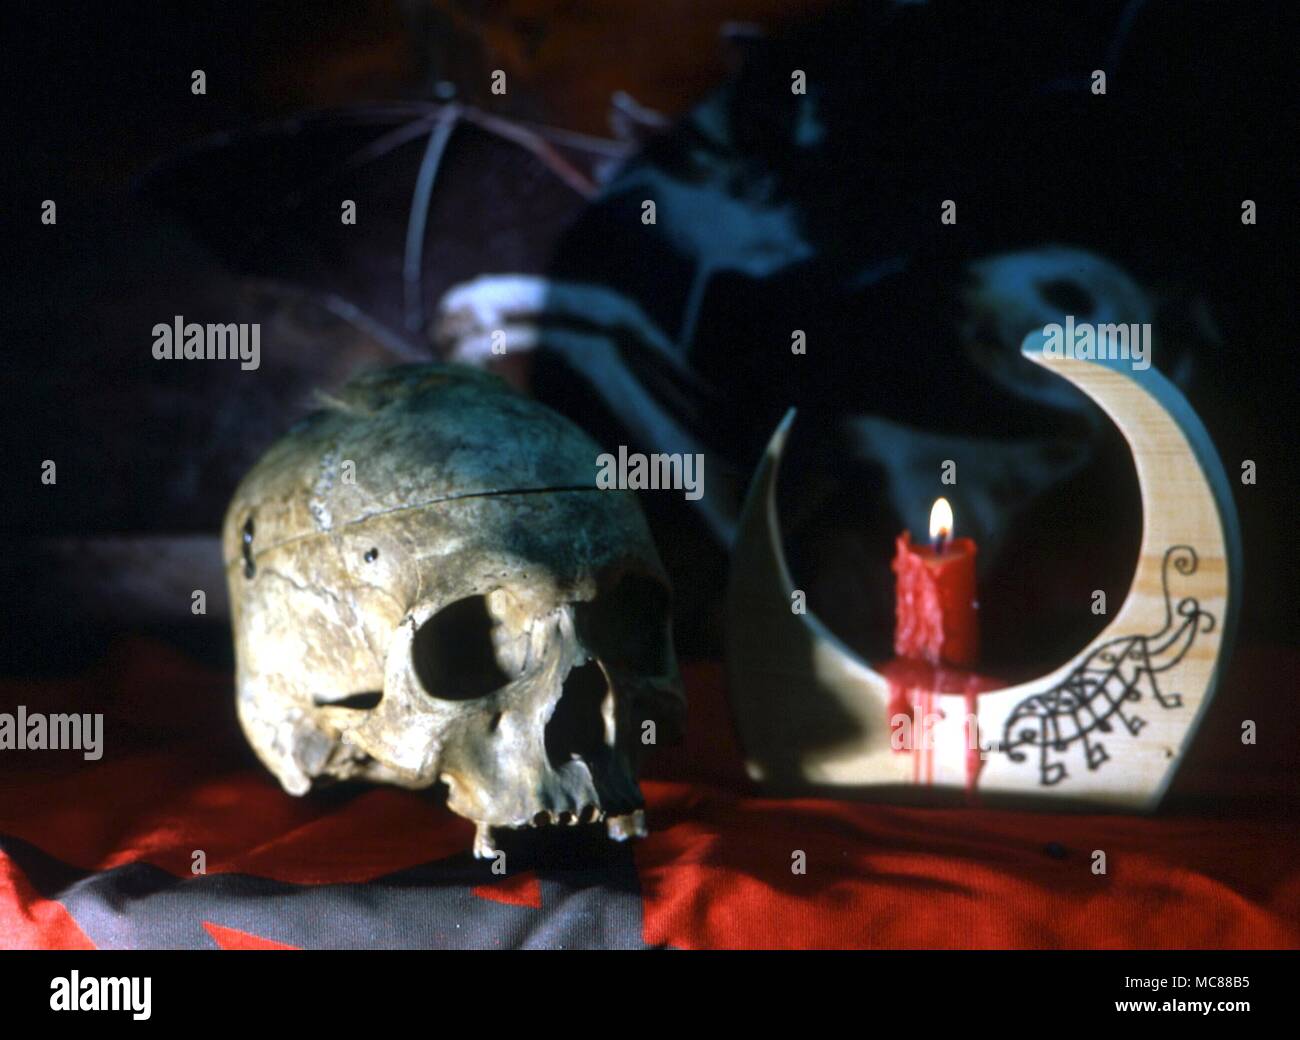 Sigillated candelabro con velas encendidas y cráneo humano Foto de stock